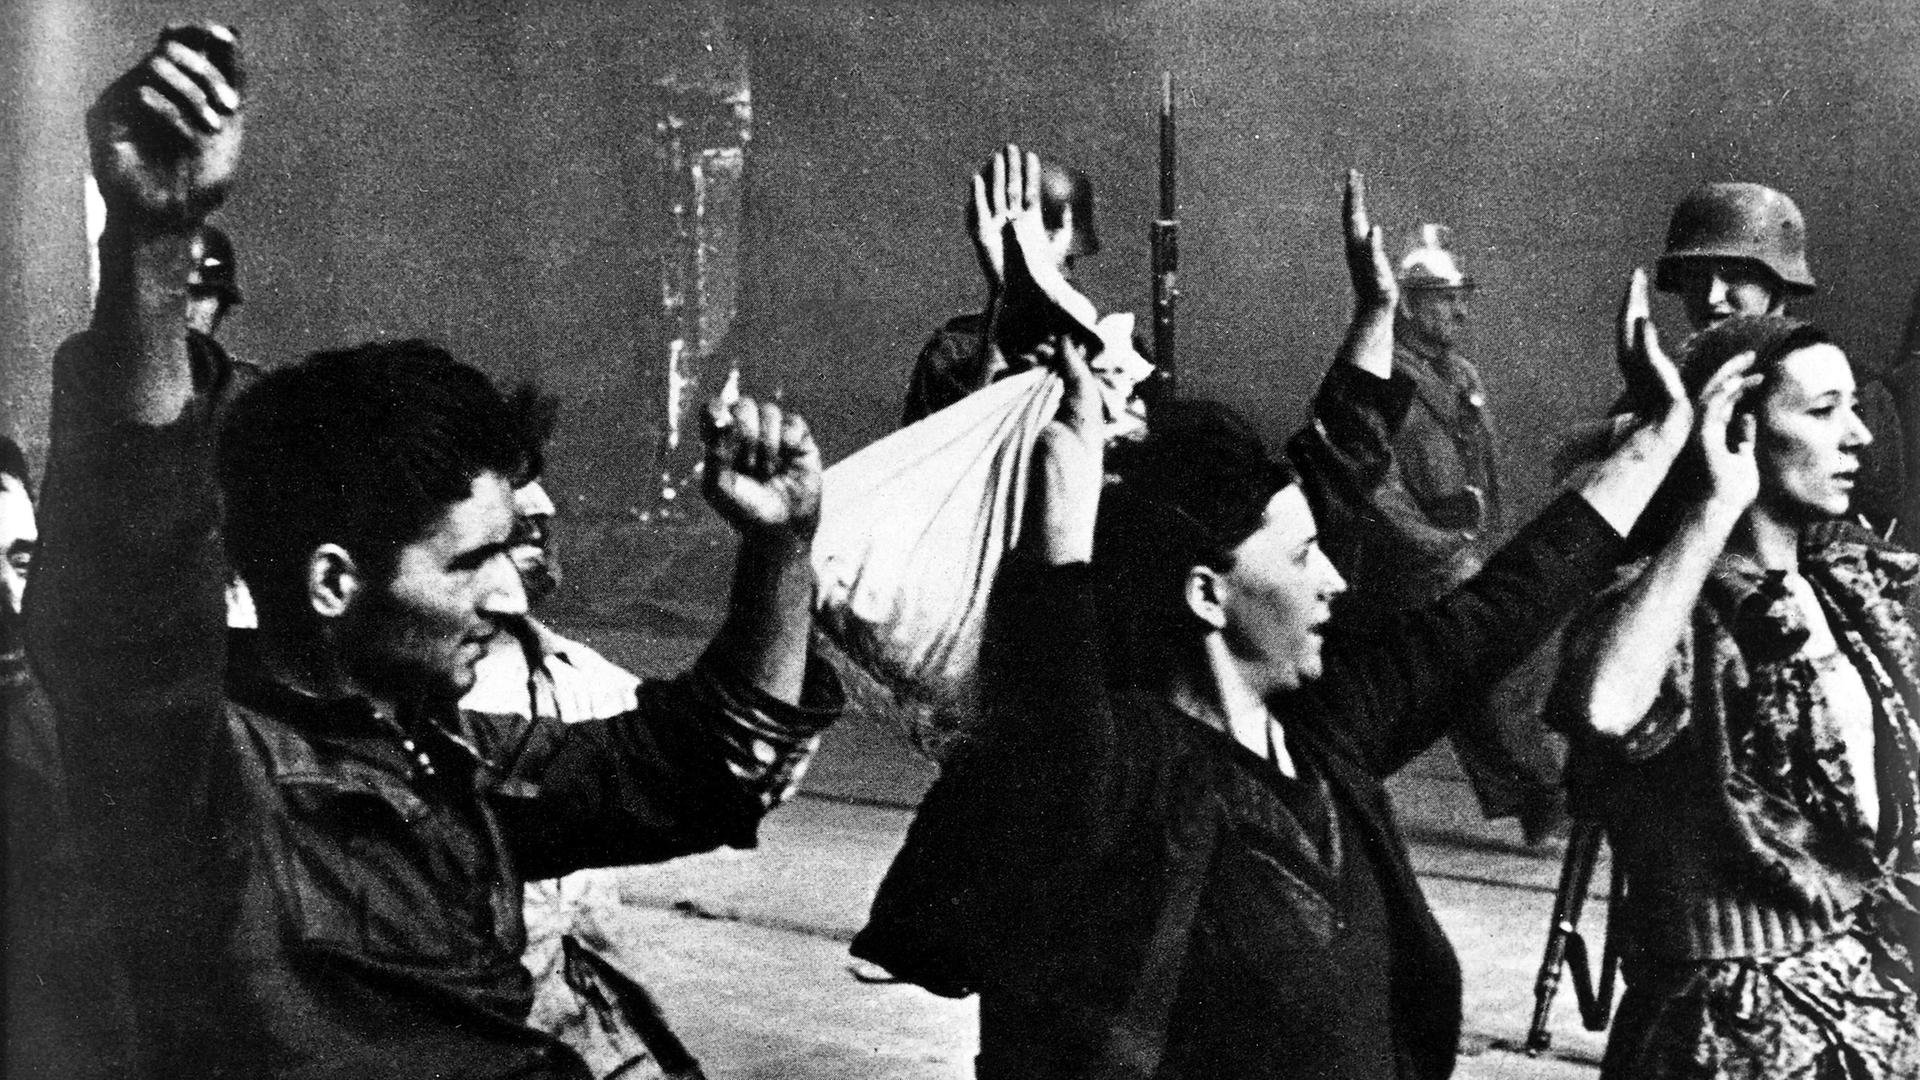 Historische Aufnahme von einem Mann und zwei Frauen mit erhobenen Armen, die von der SS-Polizei abgeführt werden.